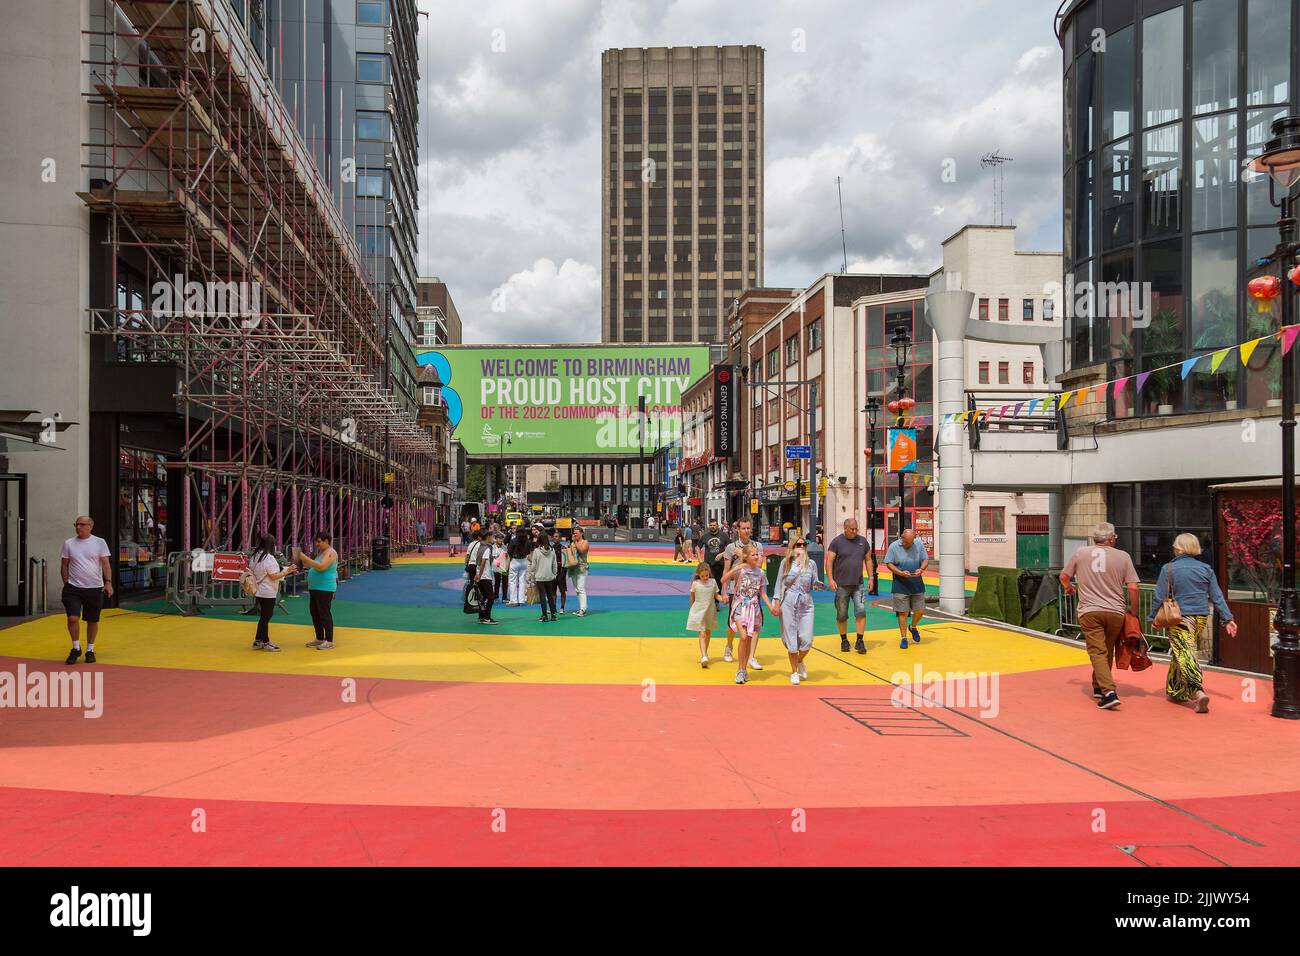 Besucher der Stadt werden durch ein Schild willkommen geheißen, das die stolze Gastgeberstadt der Commonwealth Games 2022 in Birmingham erklärt. Stockfoto